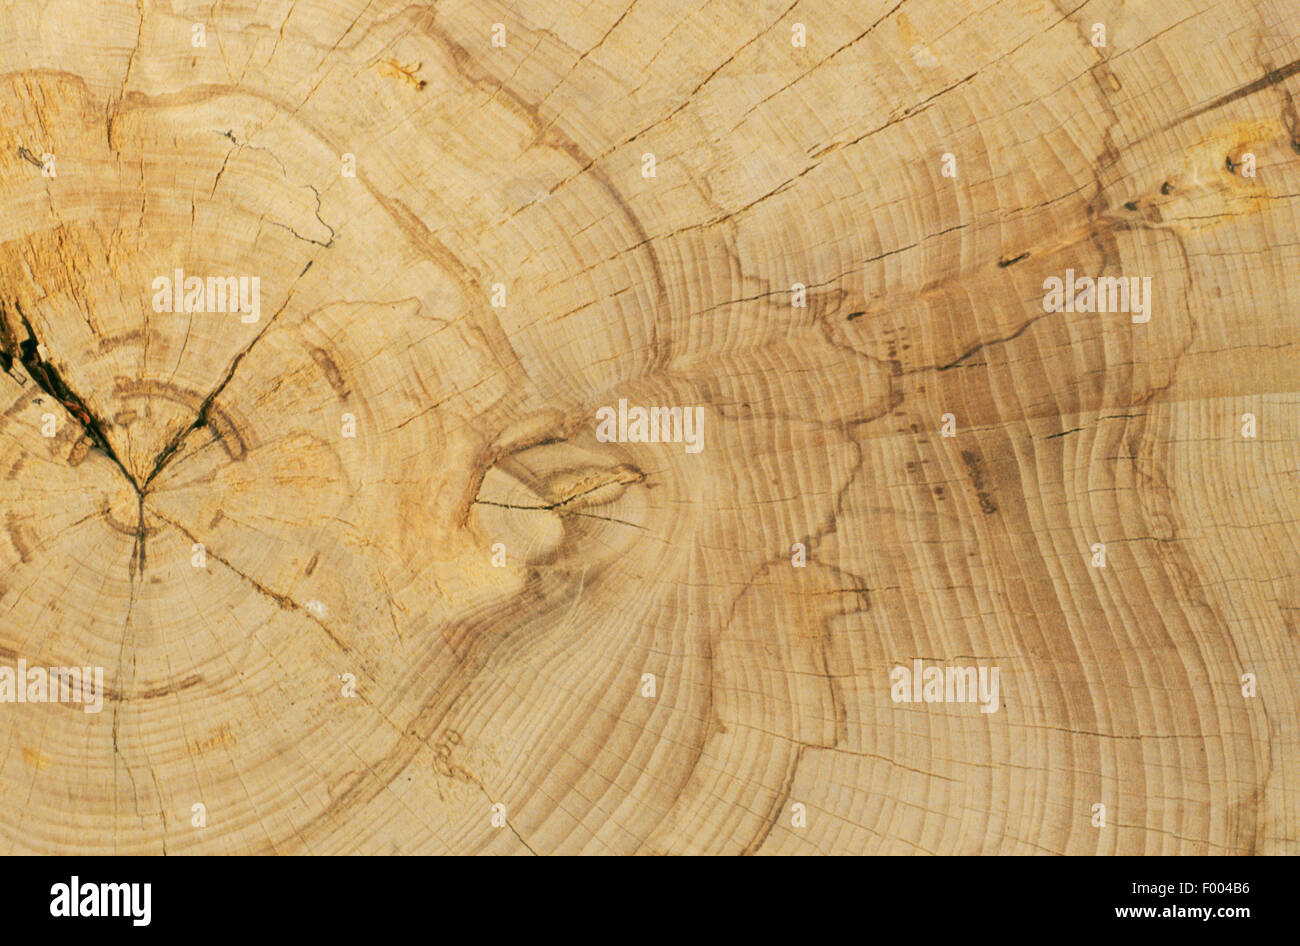 common beech (Fagus sylvatica), trunk, cross section Stock Photo